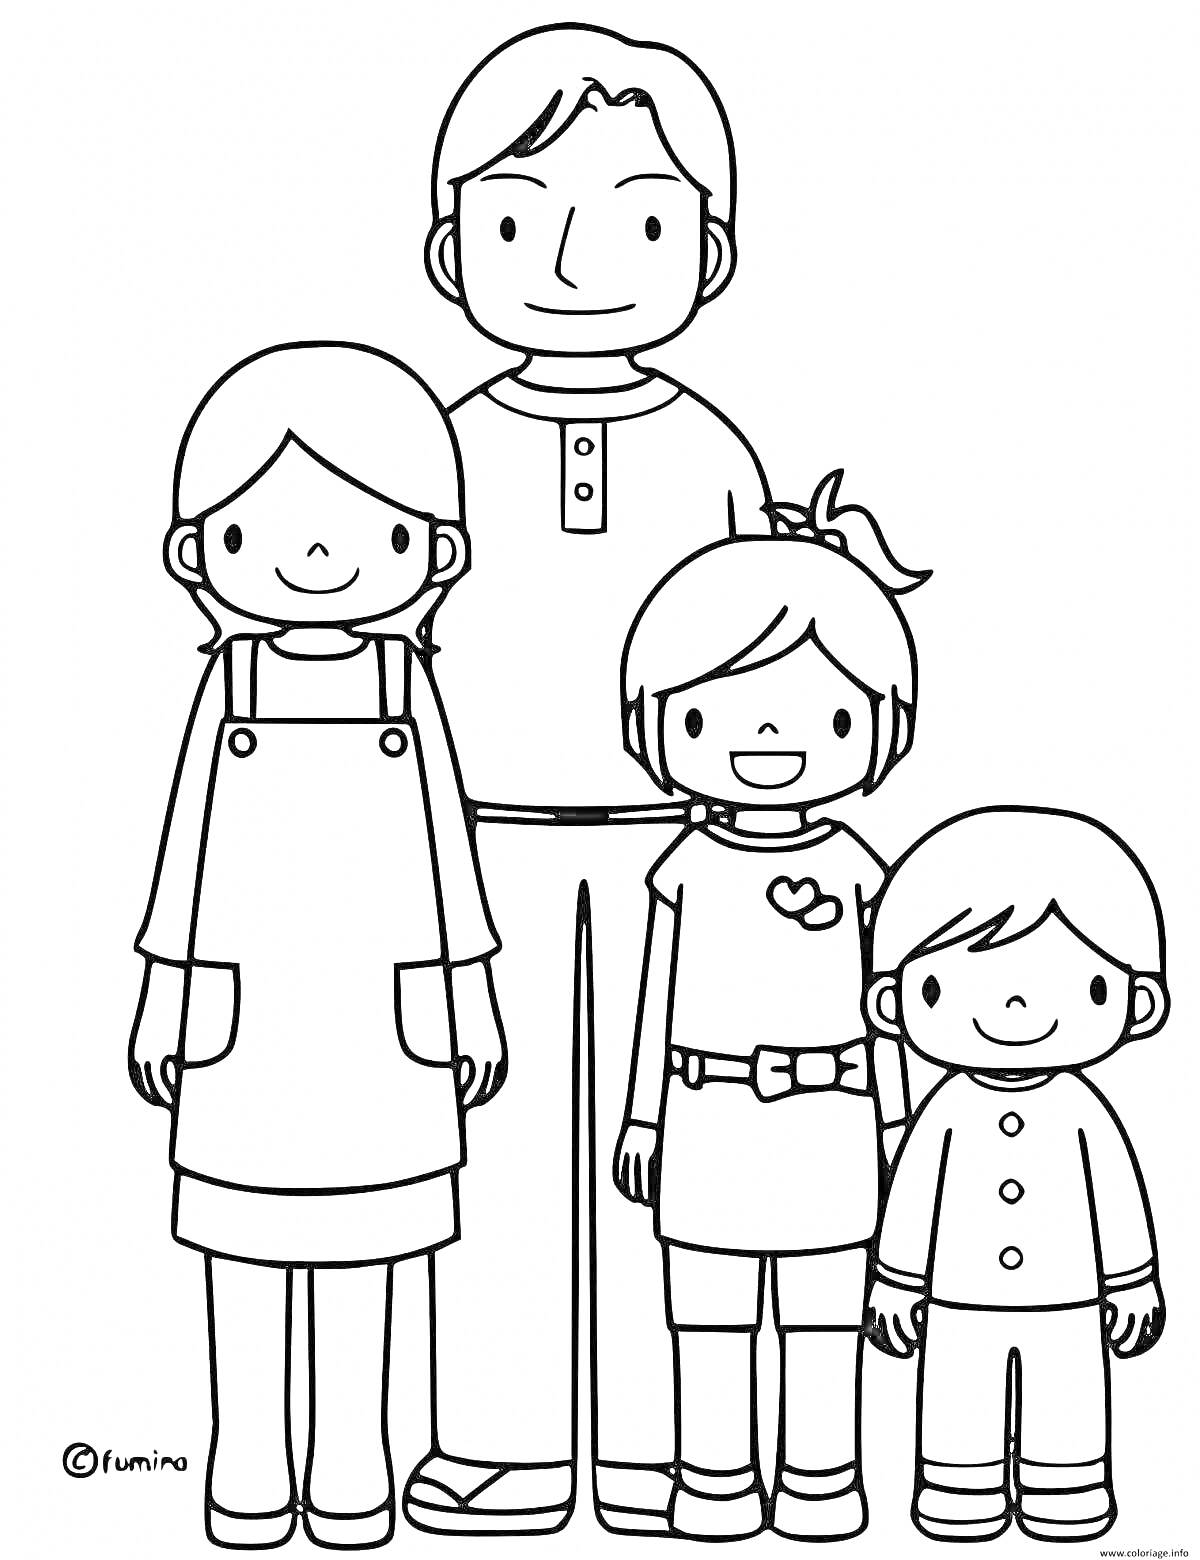 Раскраска Семья из 3 человек: мама в переднике, папа в кнопочной рубашке и двое детей - девочка и мальчик